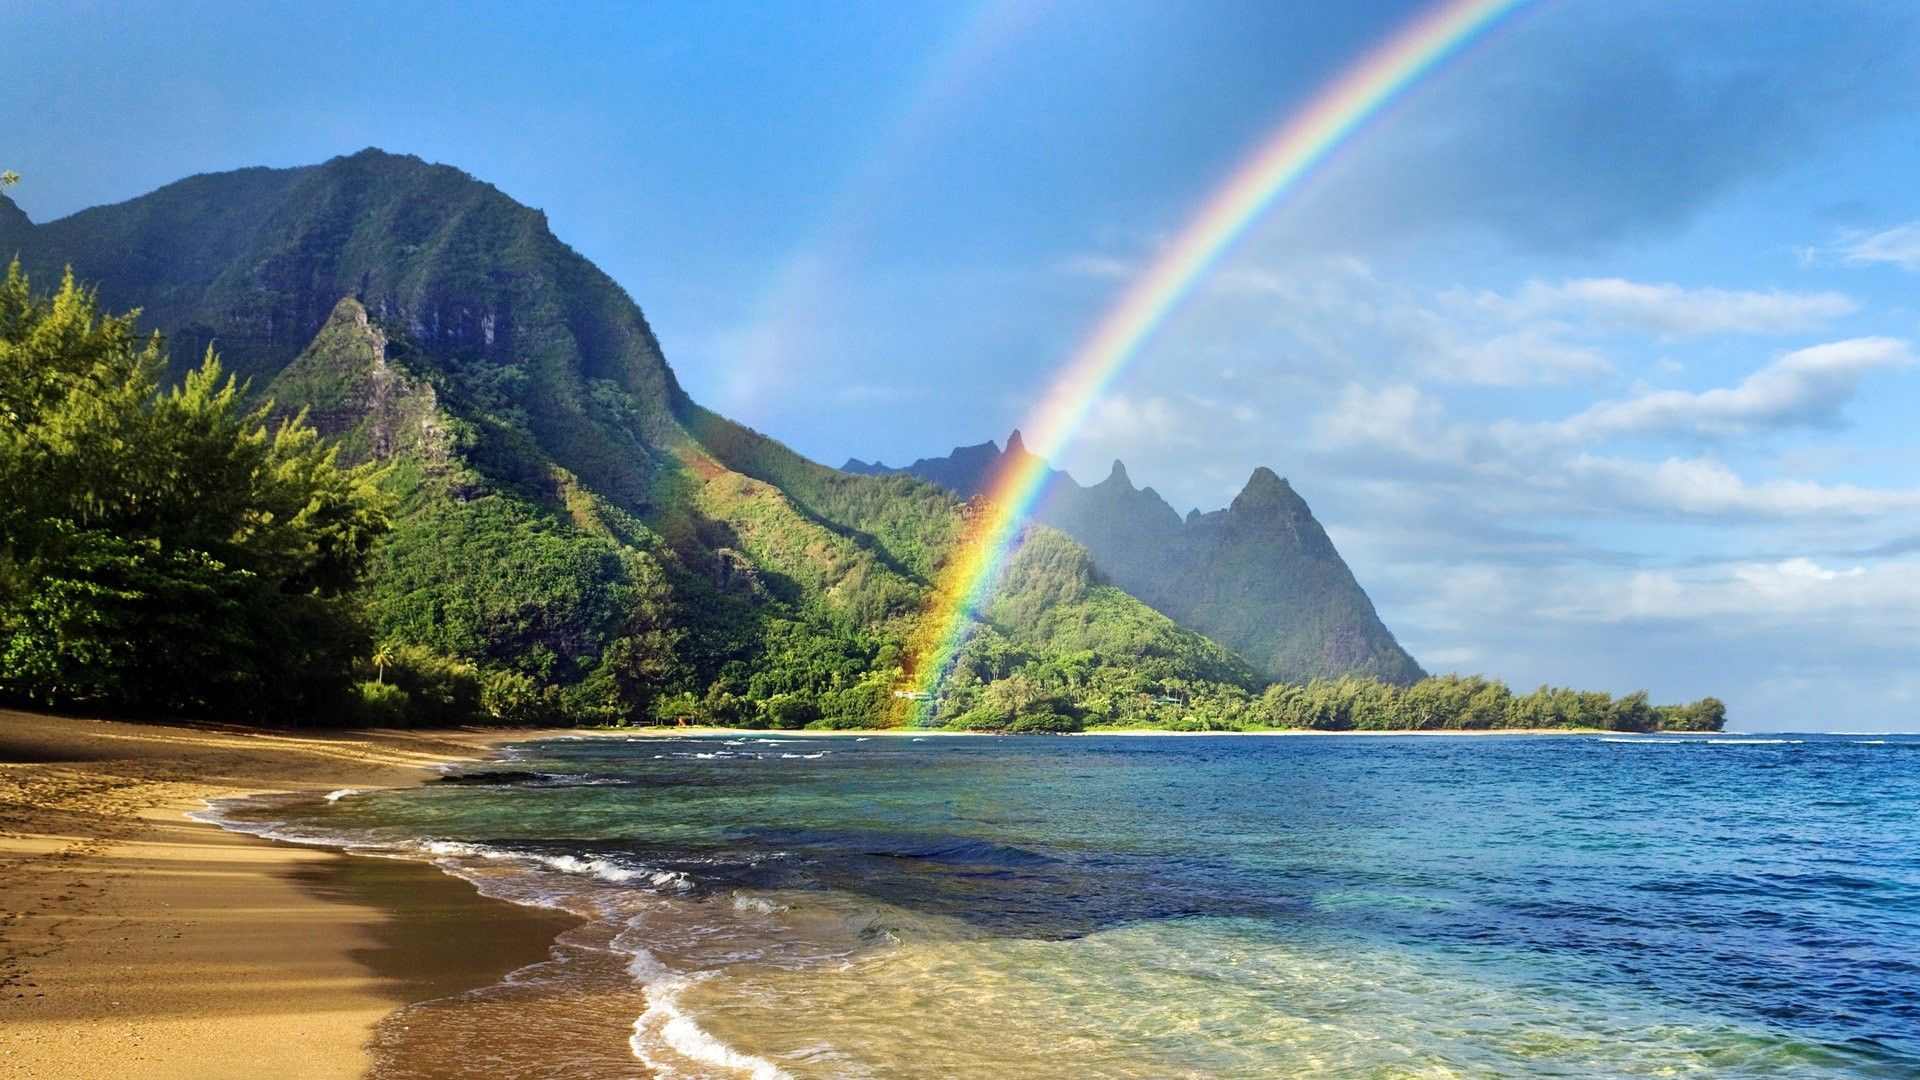 عکس های خیره کننده از جزیره زیبای هاوایی